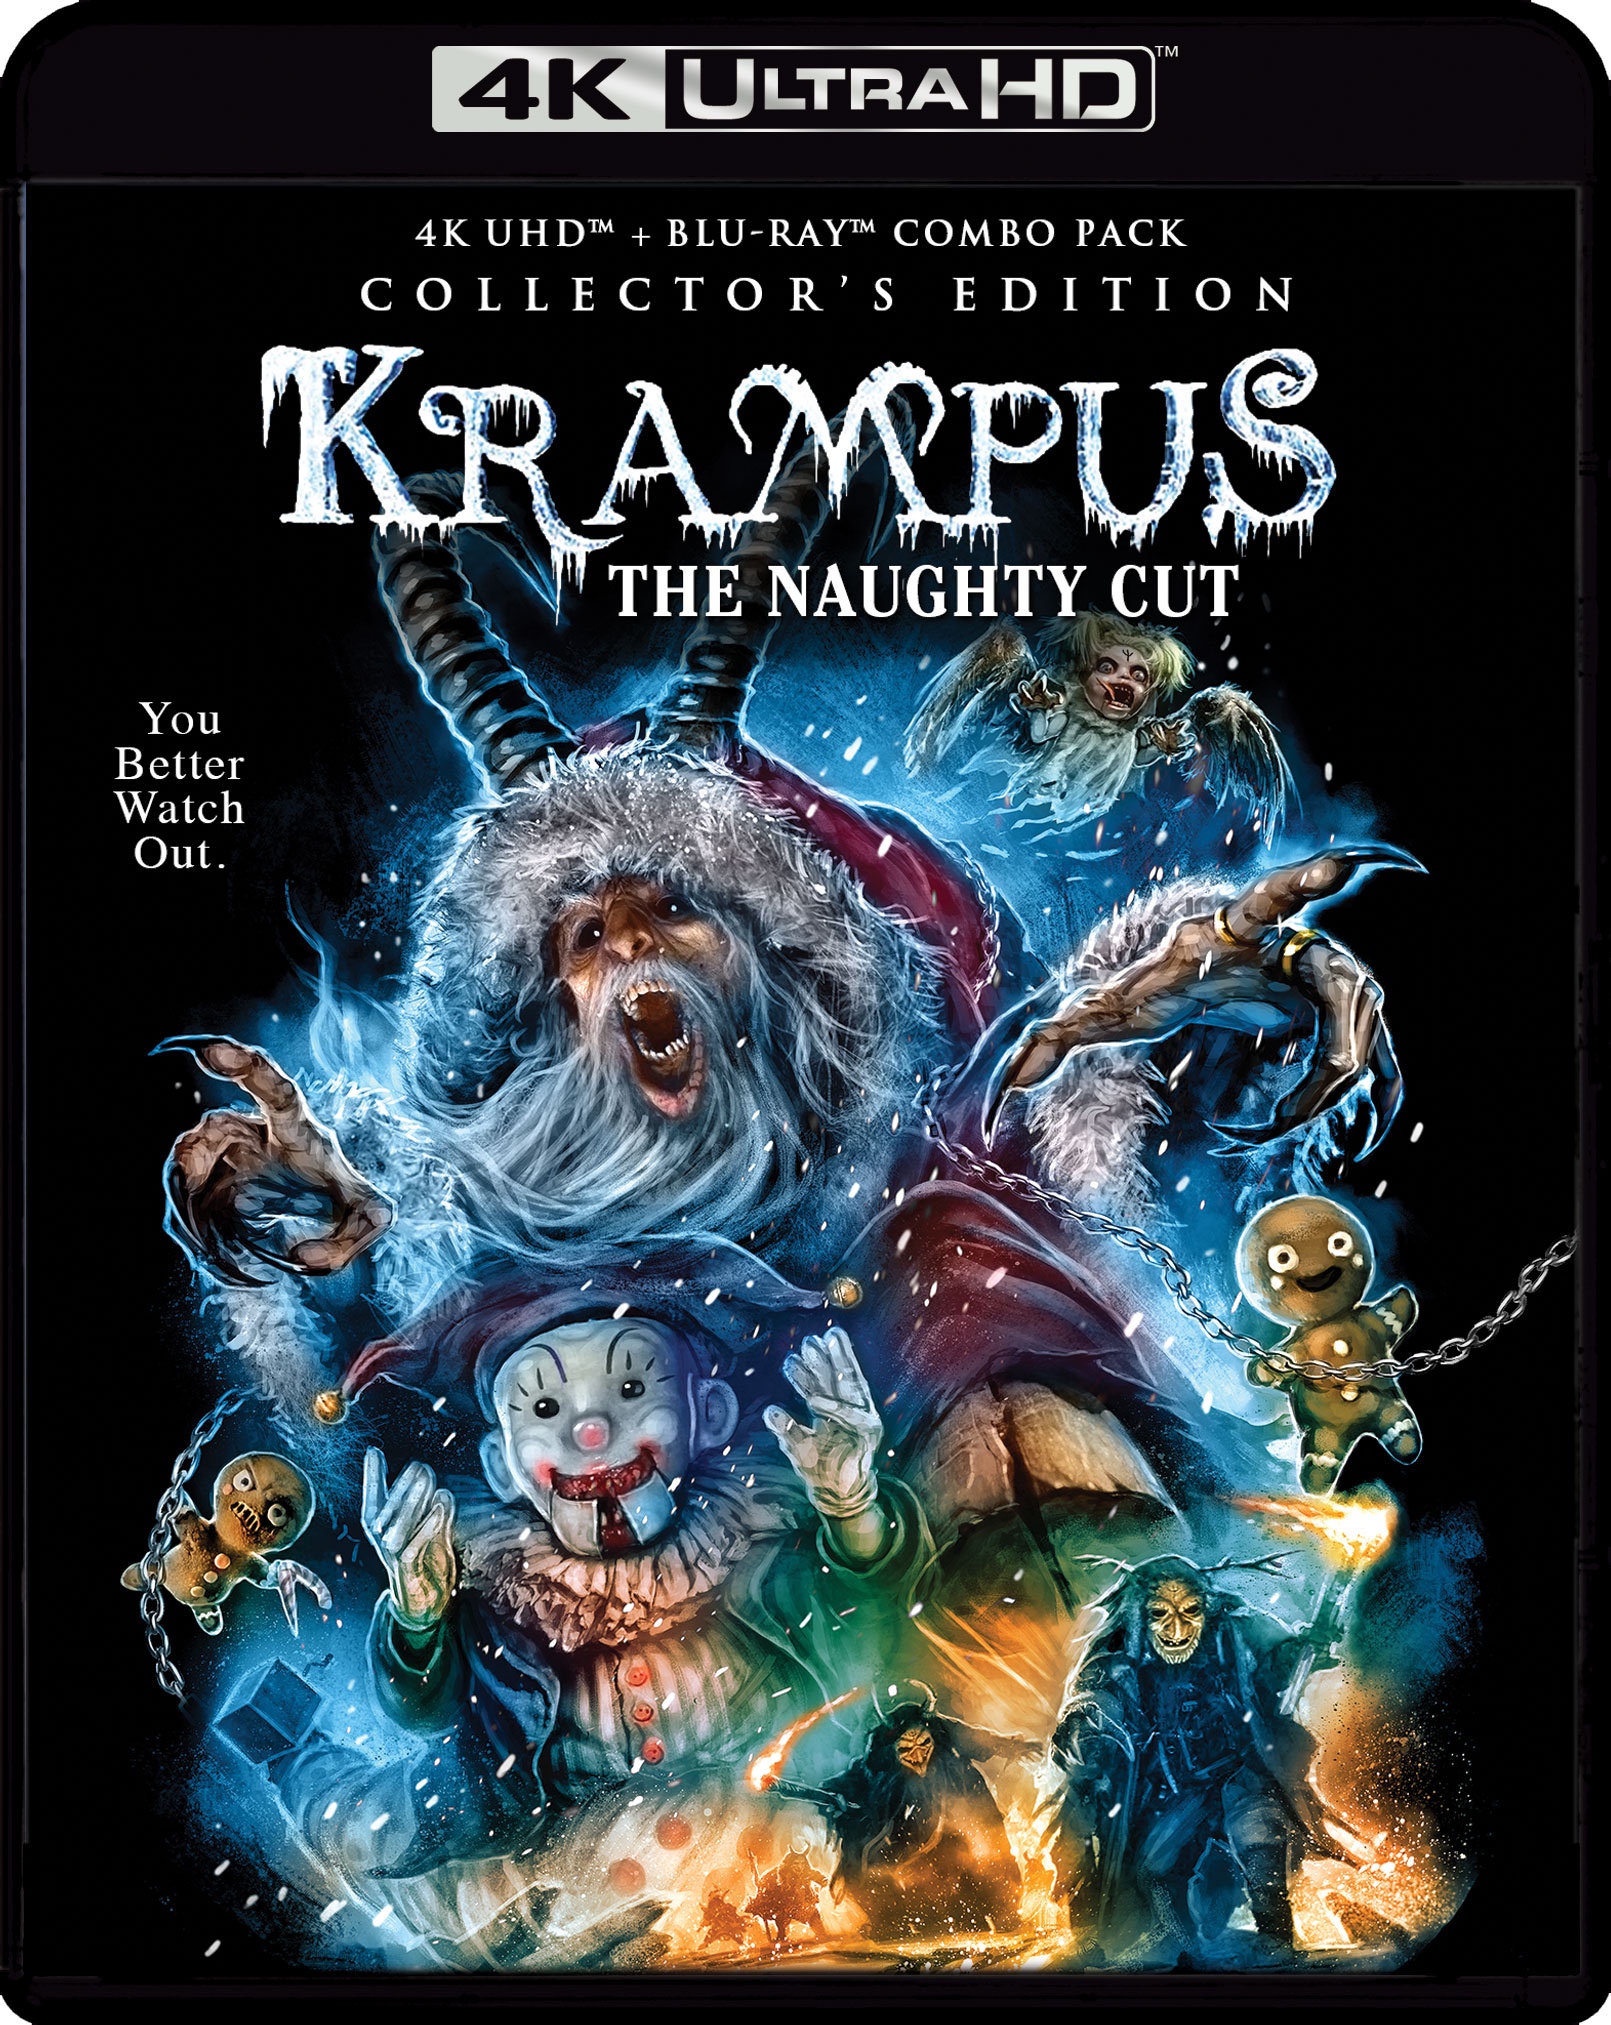 4k Ultra Review: Krampus